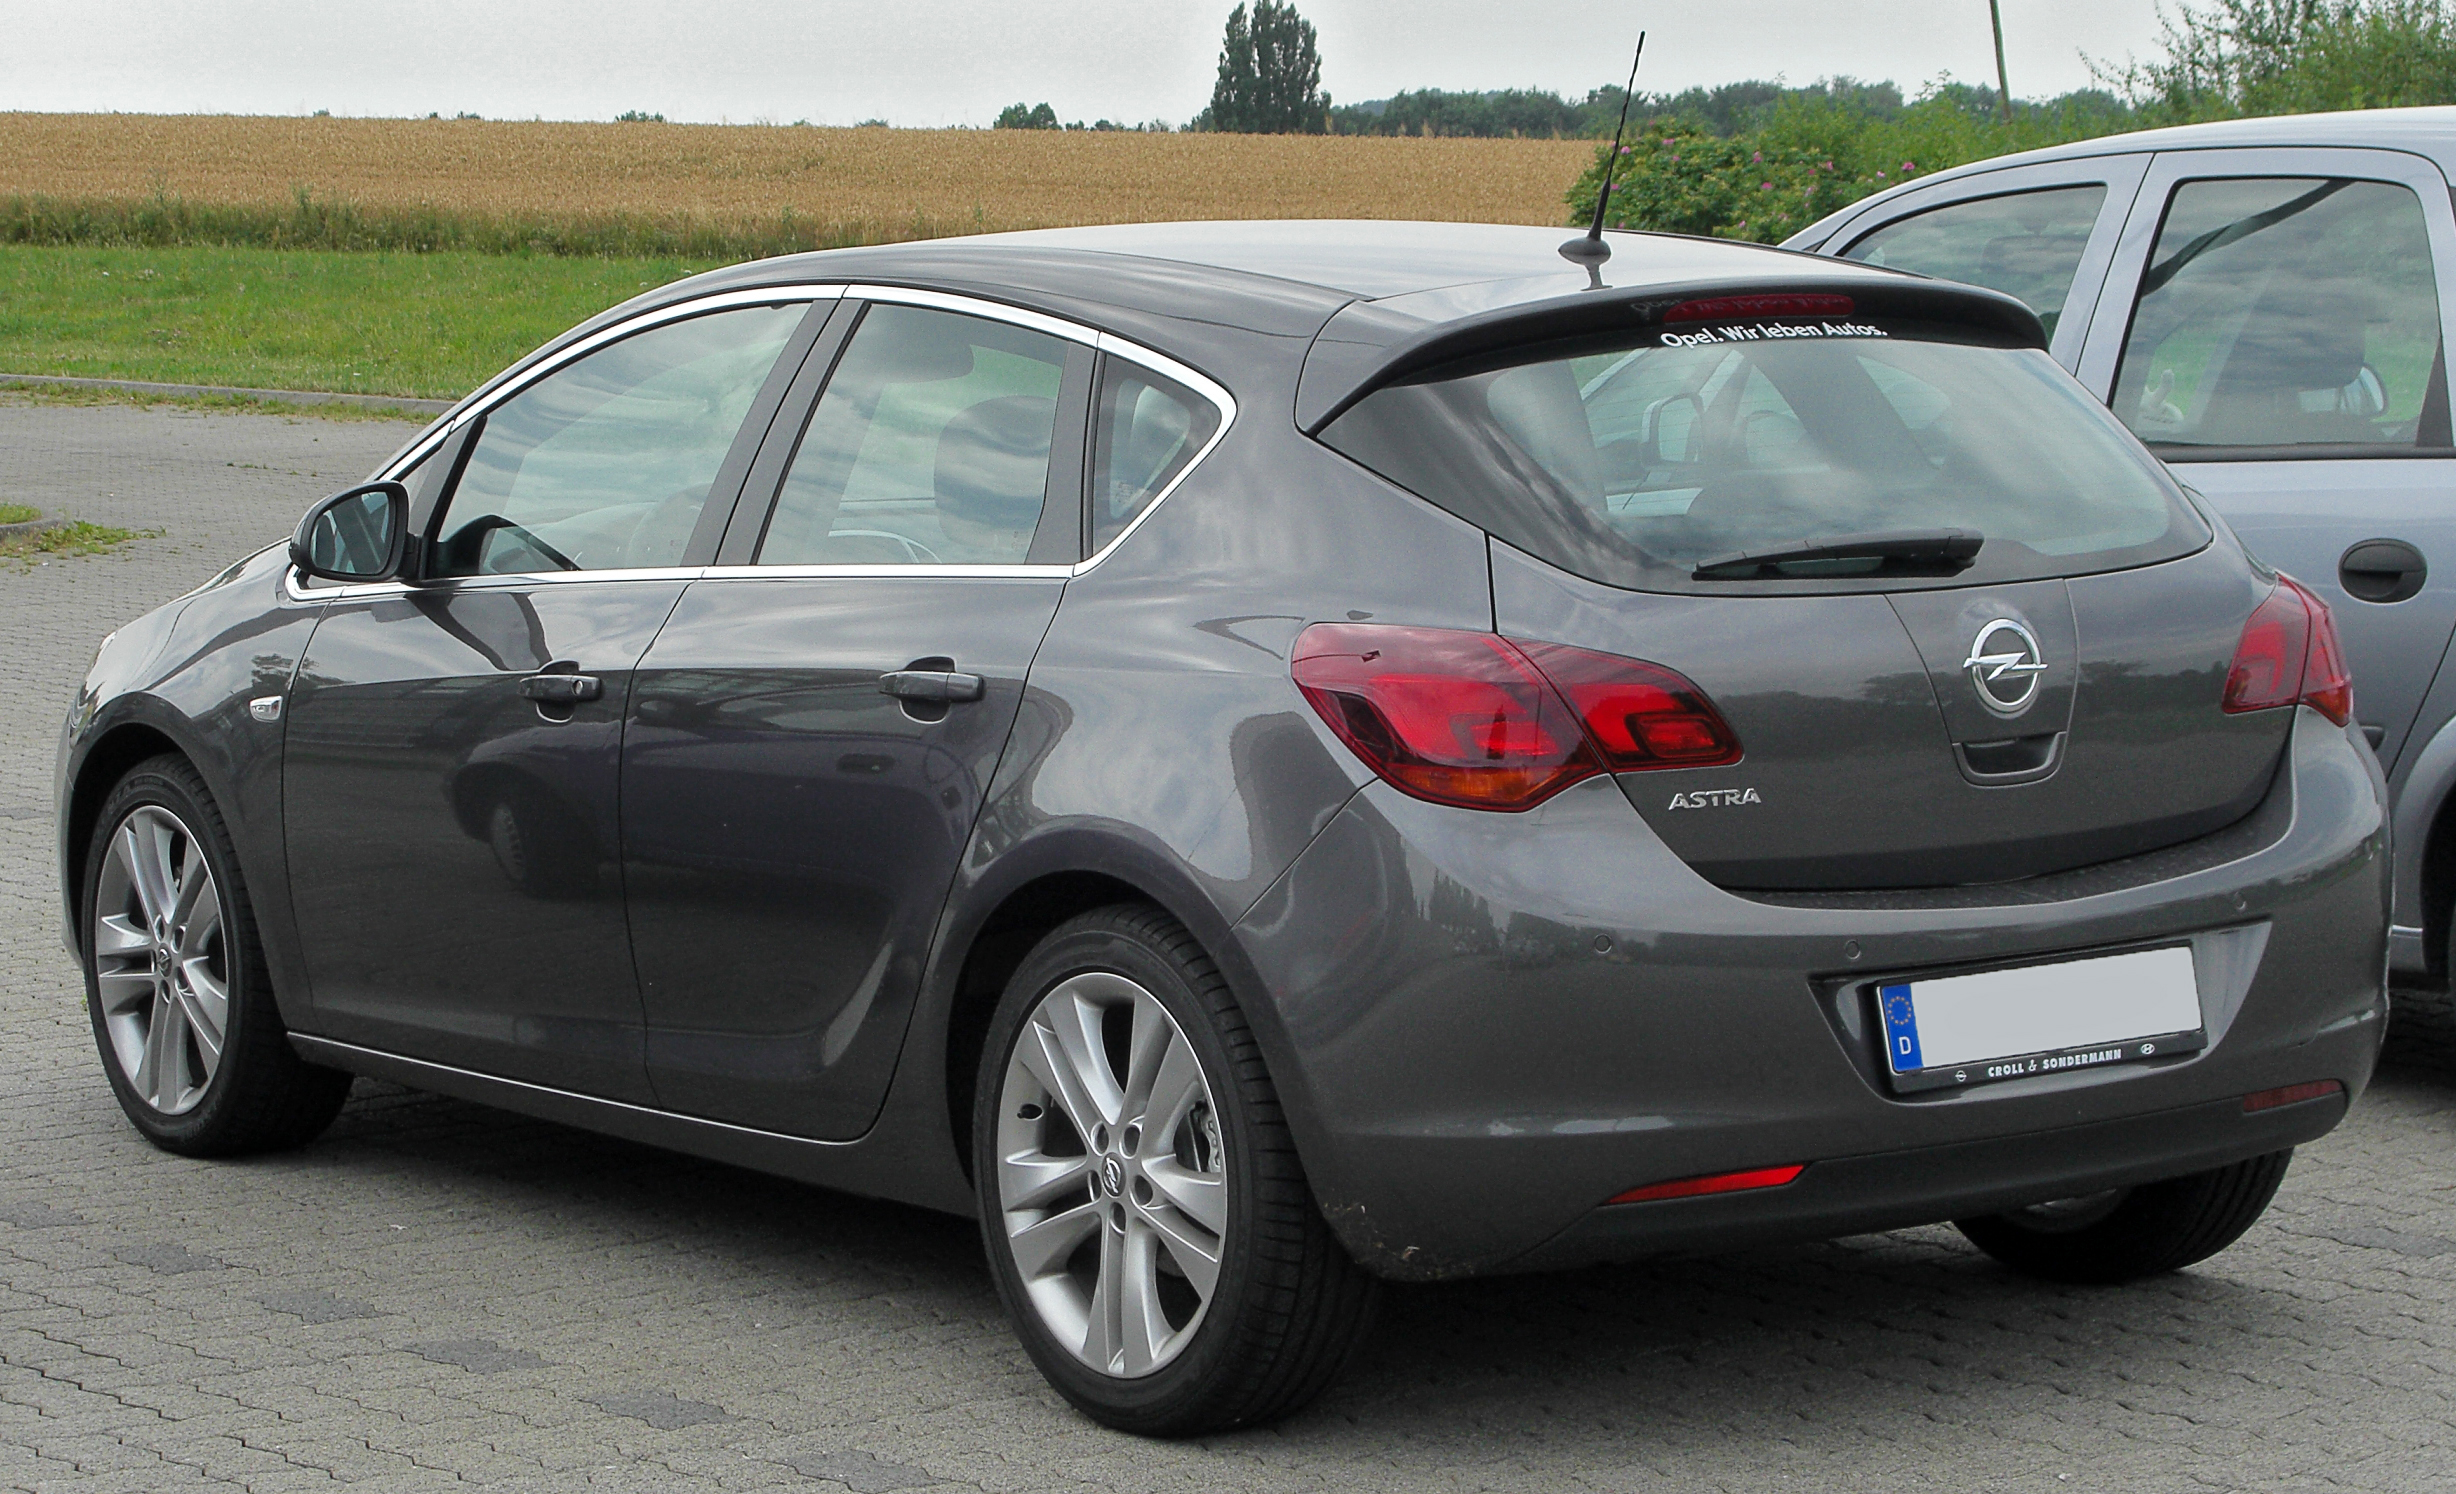 Archivo:Opel Astra J rear-1 20100725.jpg - Wikipedia, la